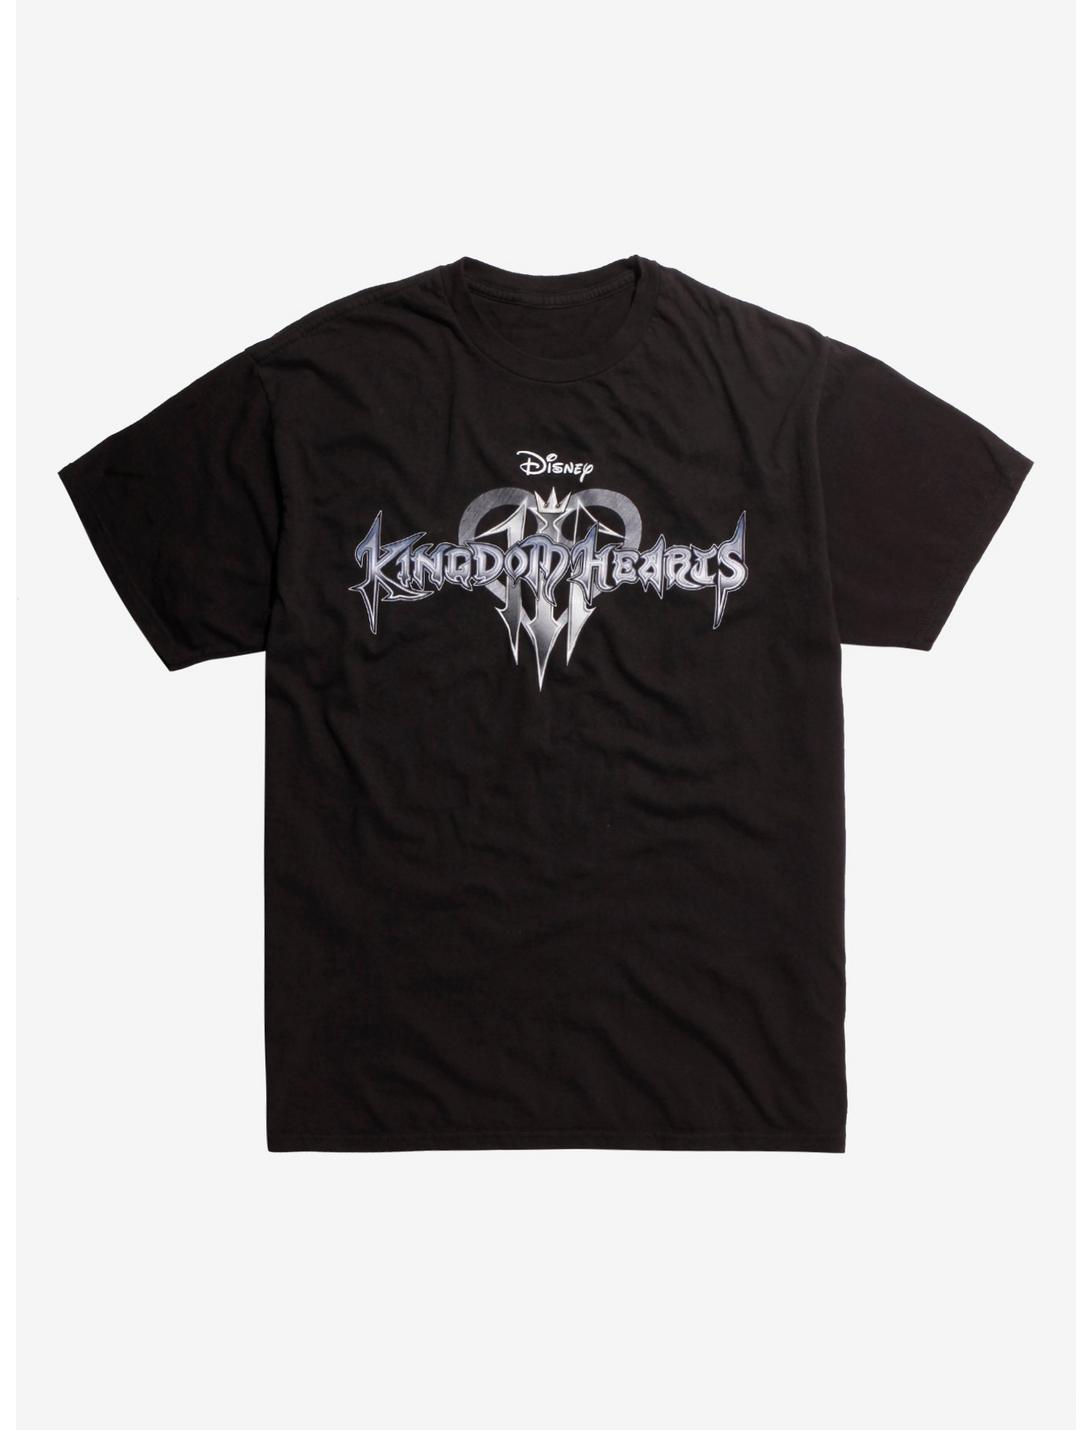 Disney Kingdom Hearts III Logo Teaser T-Shirt Hot Topic Exclusive, BLACK, hi-res